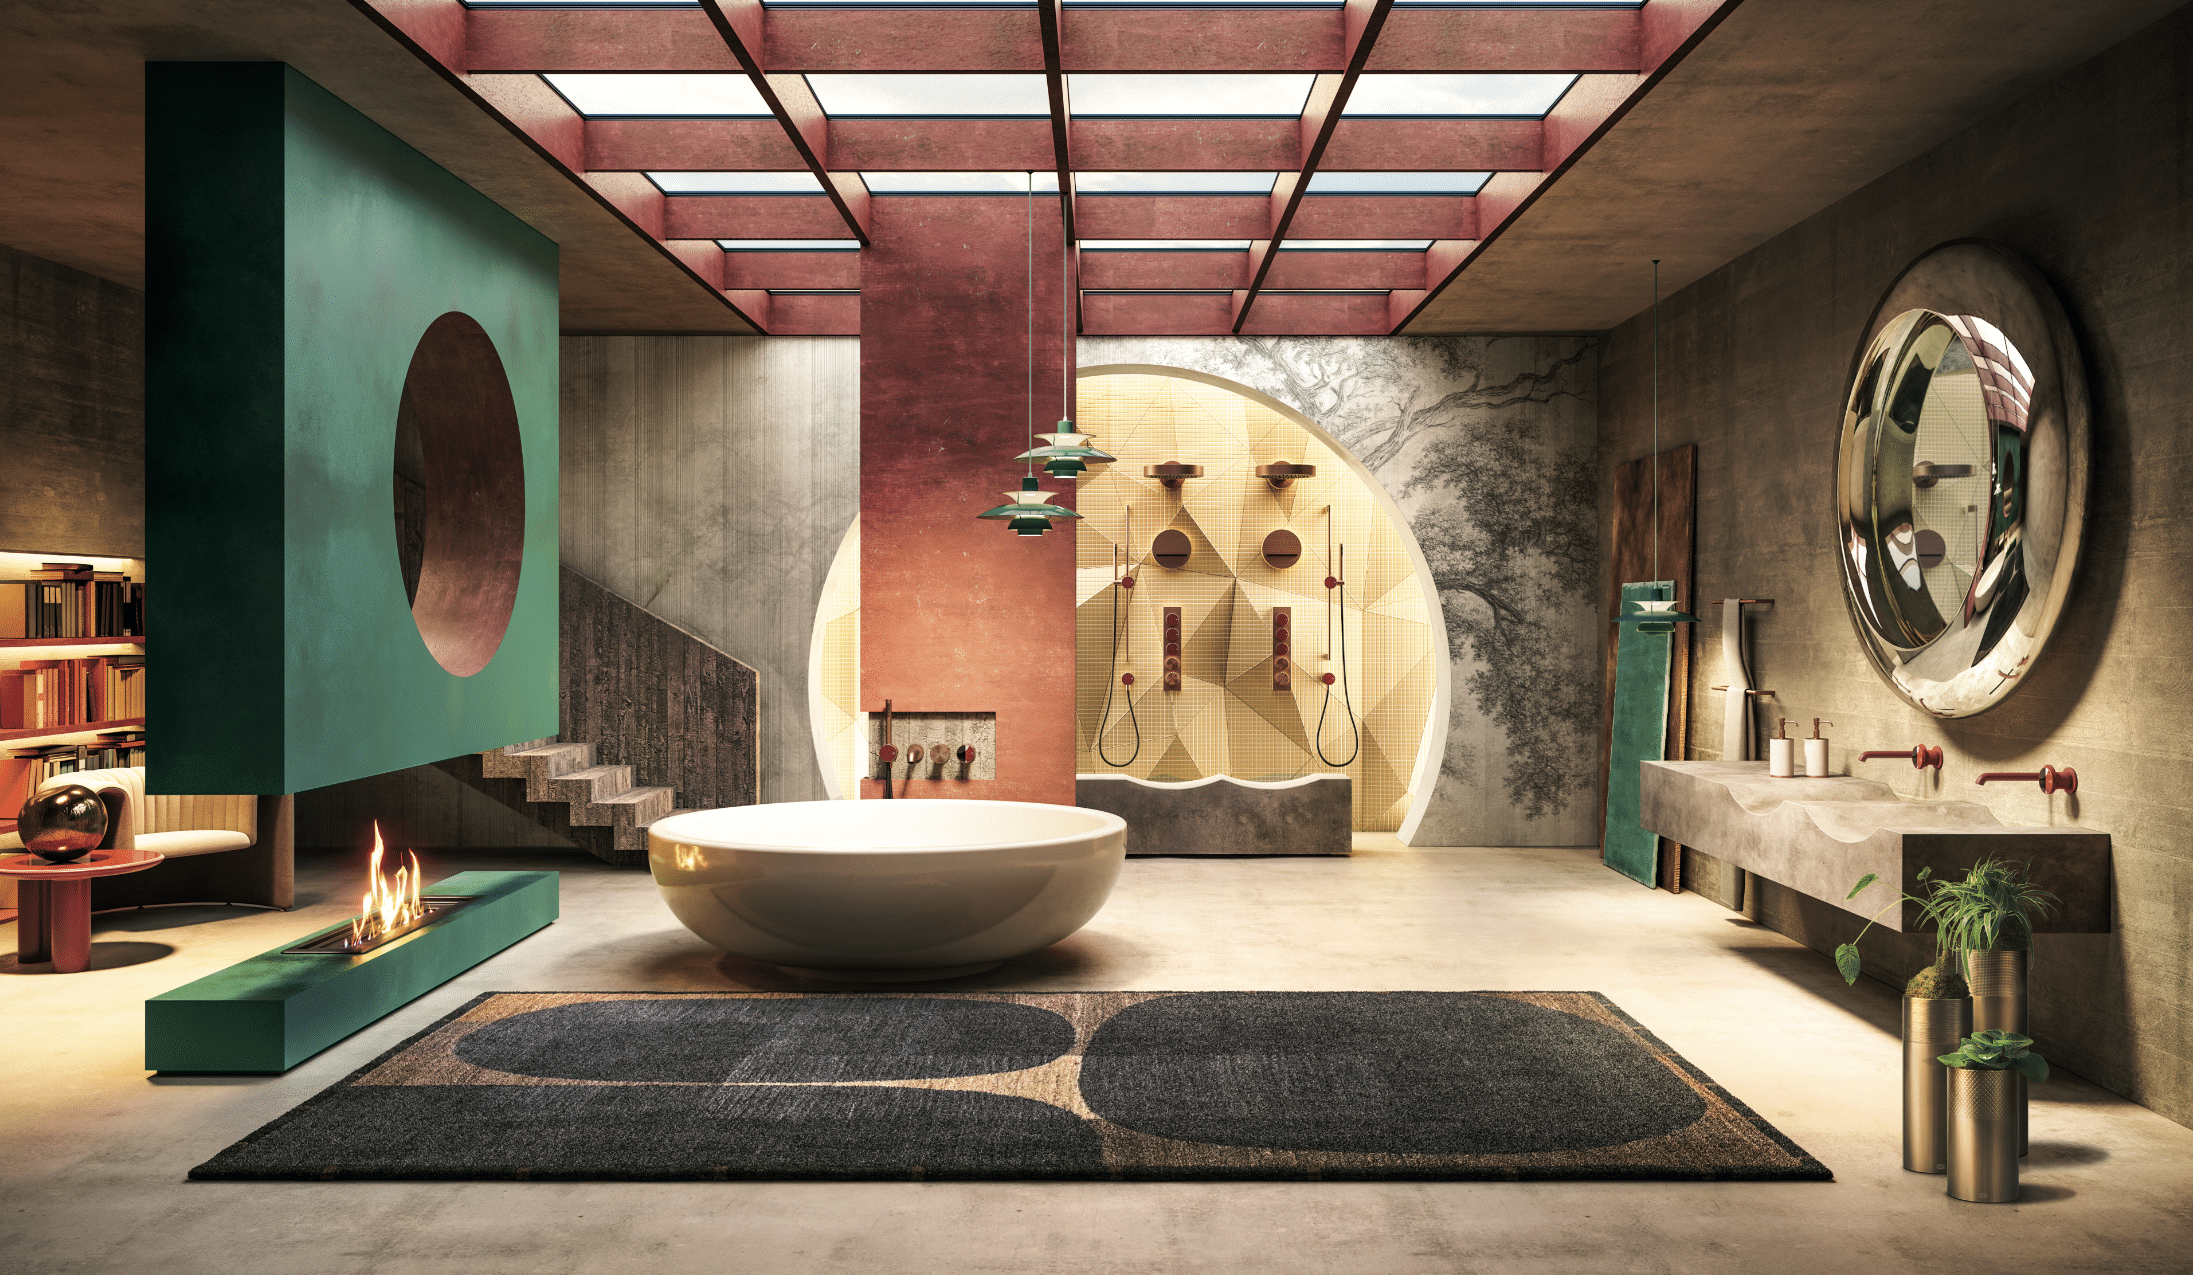 GESSI zeigt ein extravagantes Badezimmer mit freistehender, runder Badewanne, einem grünen Kamin und großem, freiliegendem Teppich mit Muster.